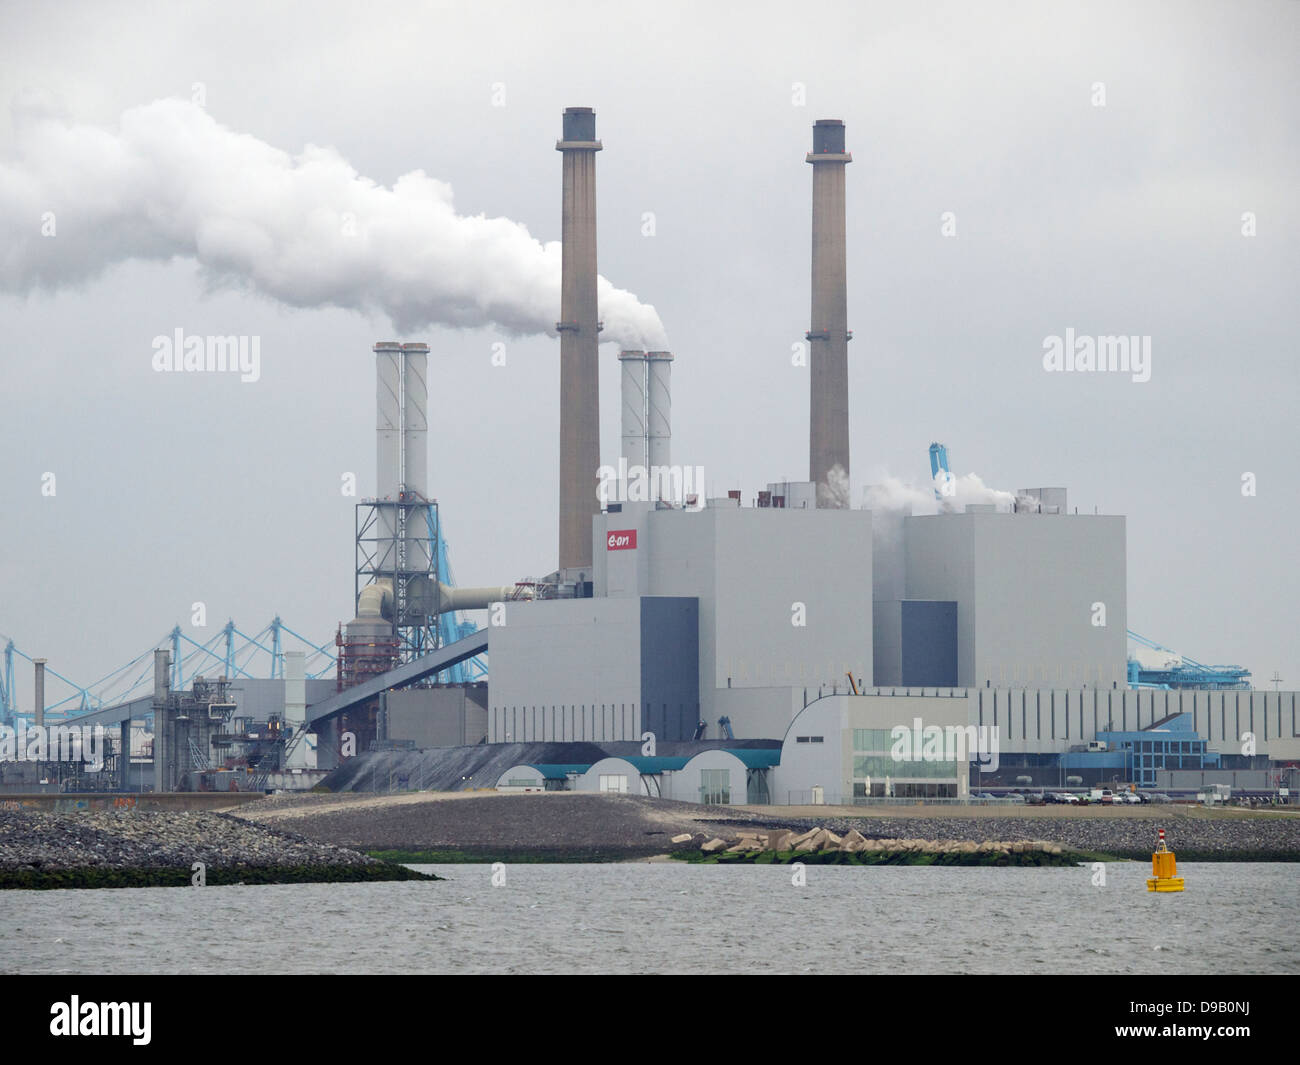 Nuevo eon la quema de carbón en la planta de energía Maasvlakte 2, el puerto de Rotterdam es uno de los mayores consumidores de energía en el país. Foto de stock